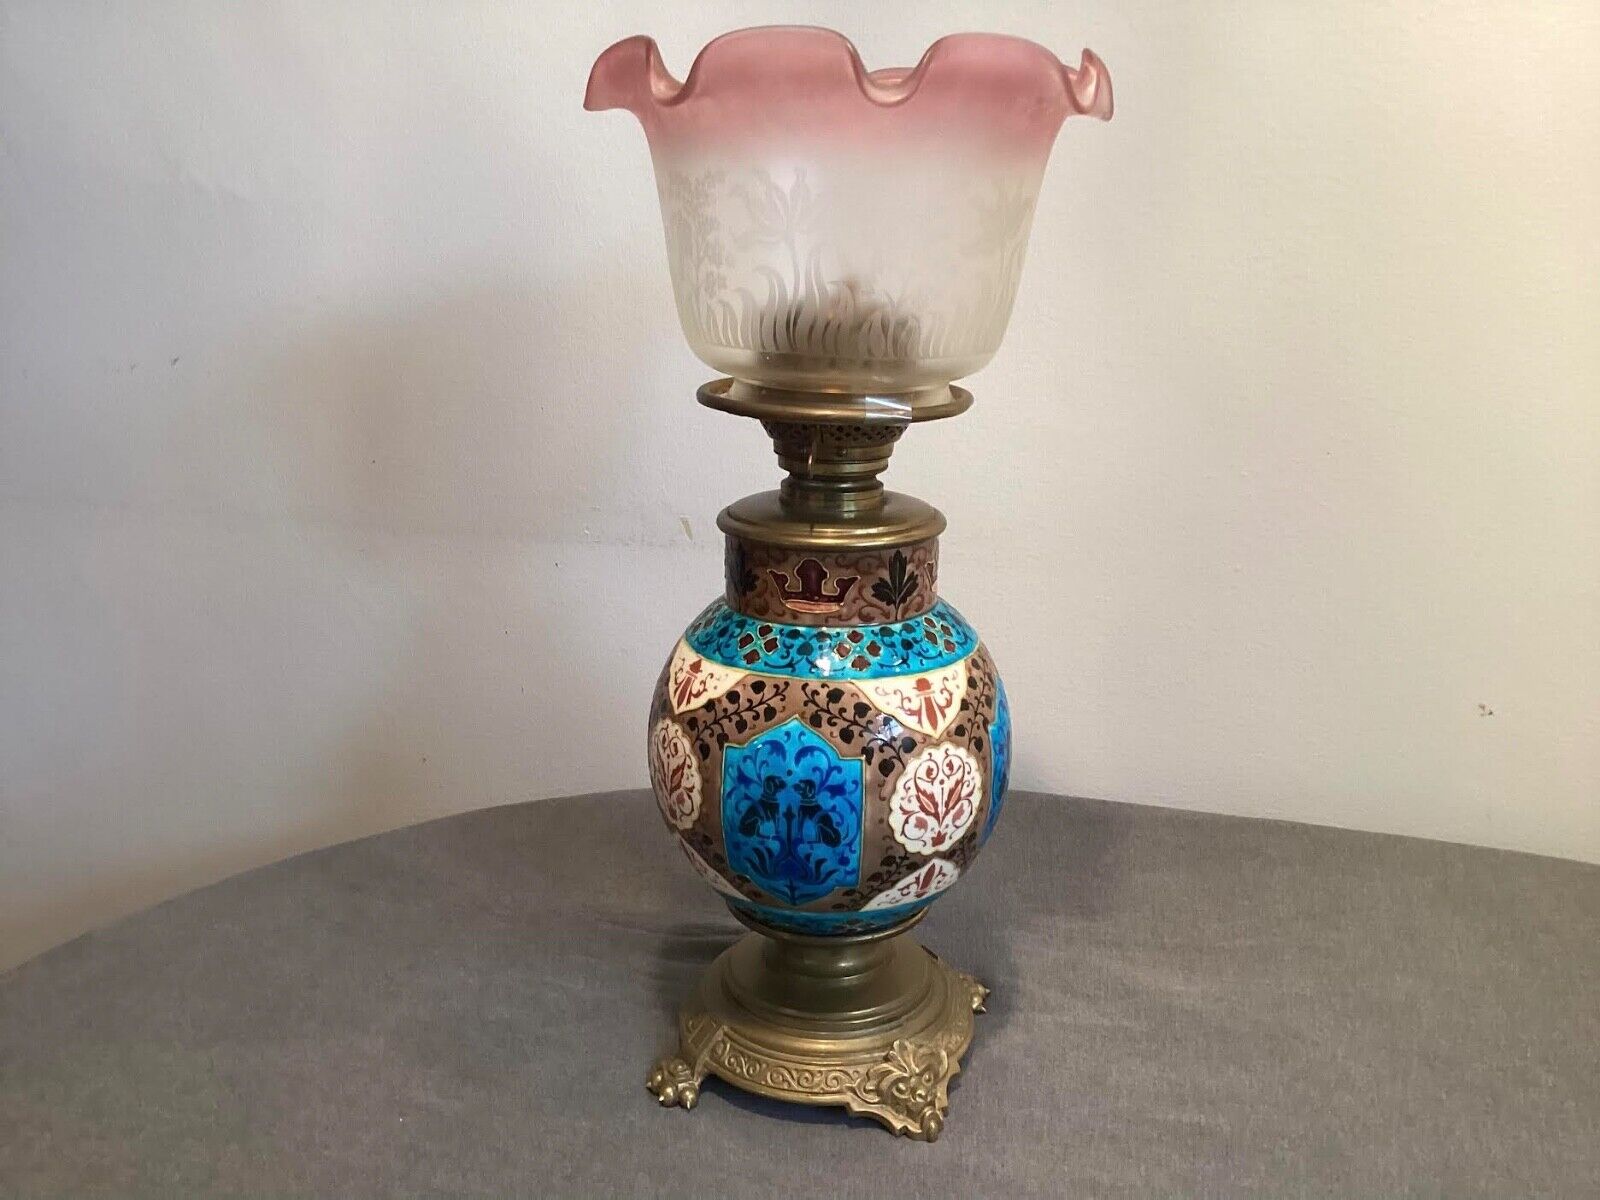 Antique kerosine lamp 19 th century in good condition